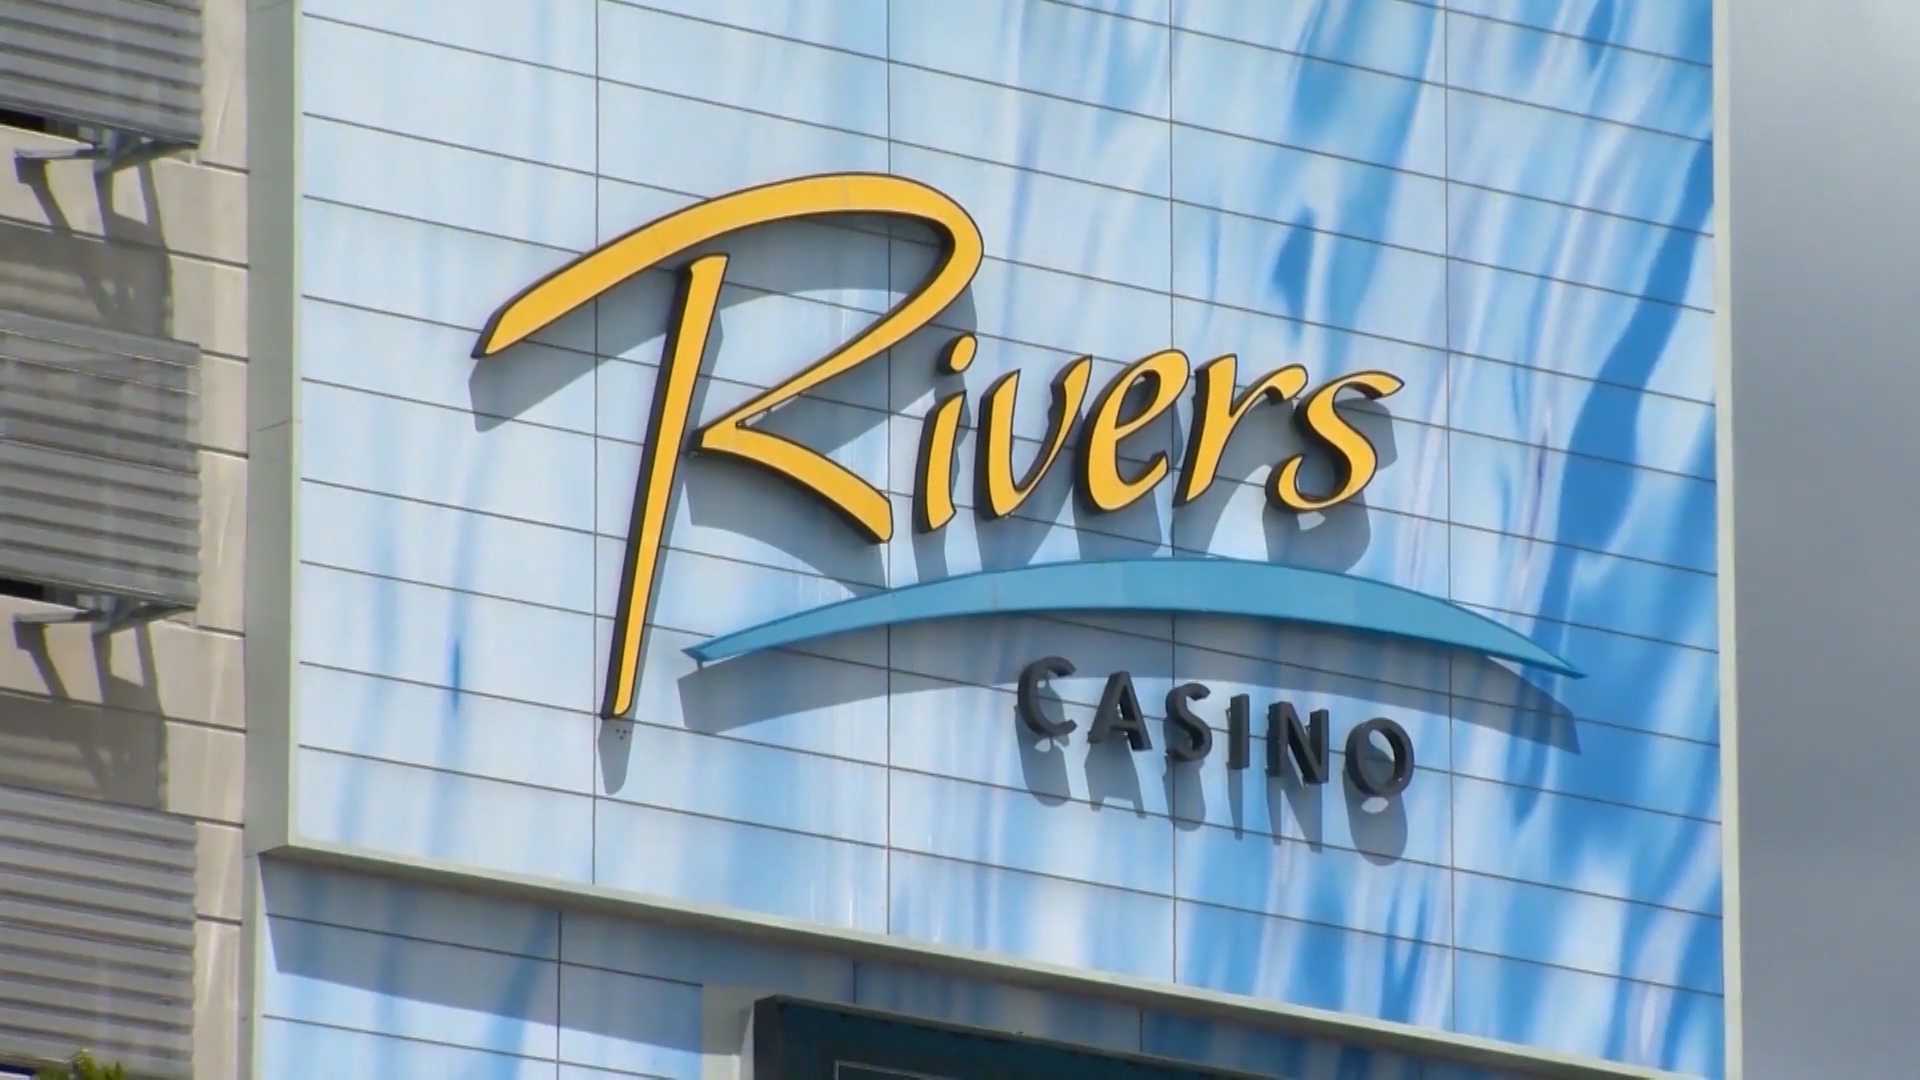 3 river casino